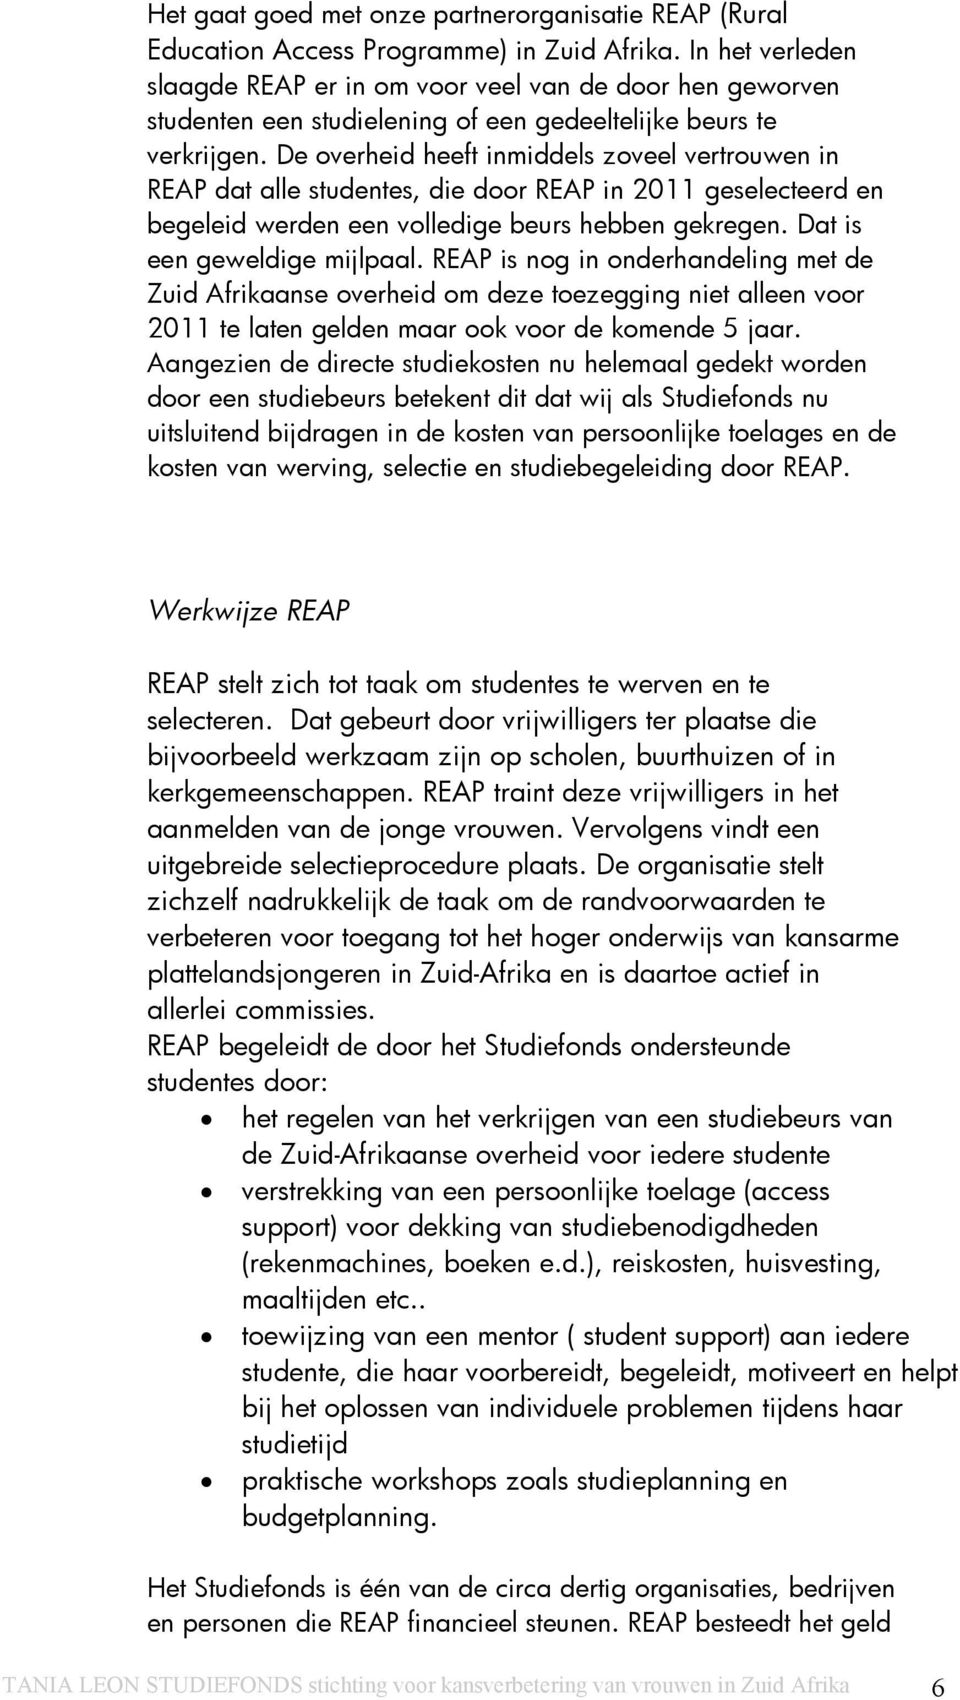 De overheid heeft inmiddels zoveel vertrouwen in REAP dat alle studentes, die door REAP in 2011 geselecteerd en begeleid werden een volledige beurs hebben gekregen. Dat is een geweldige mijlpaal.